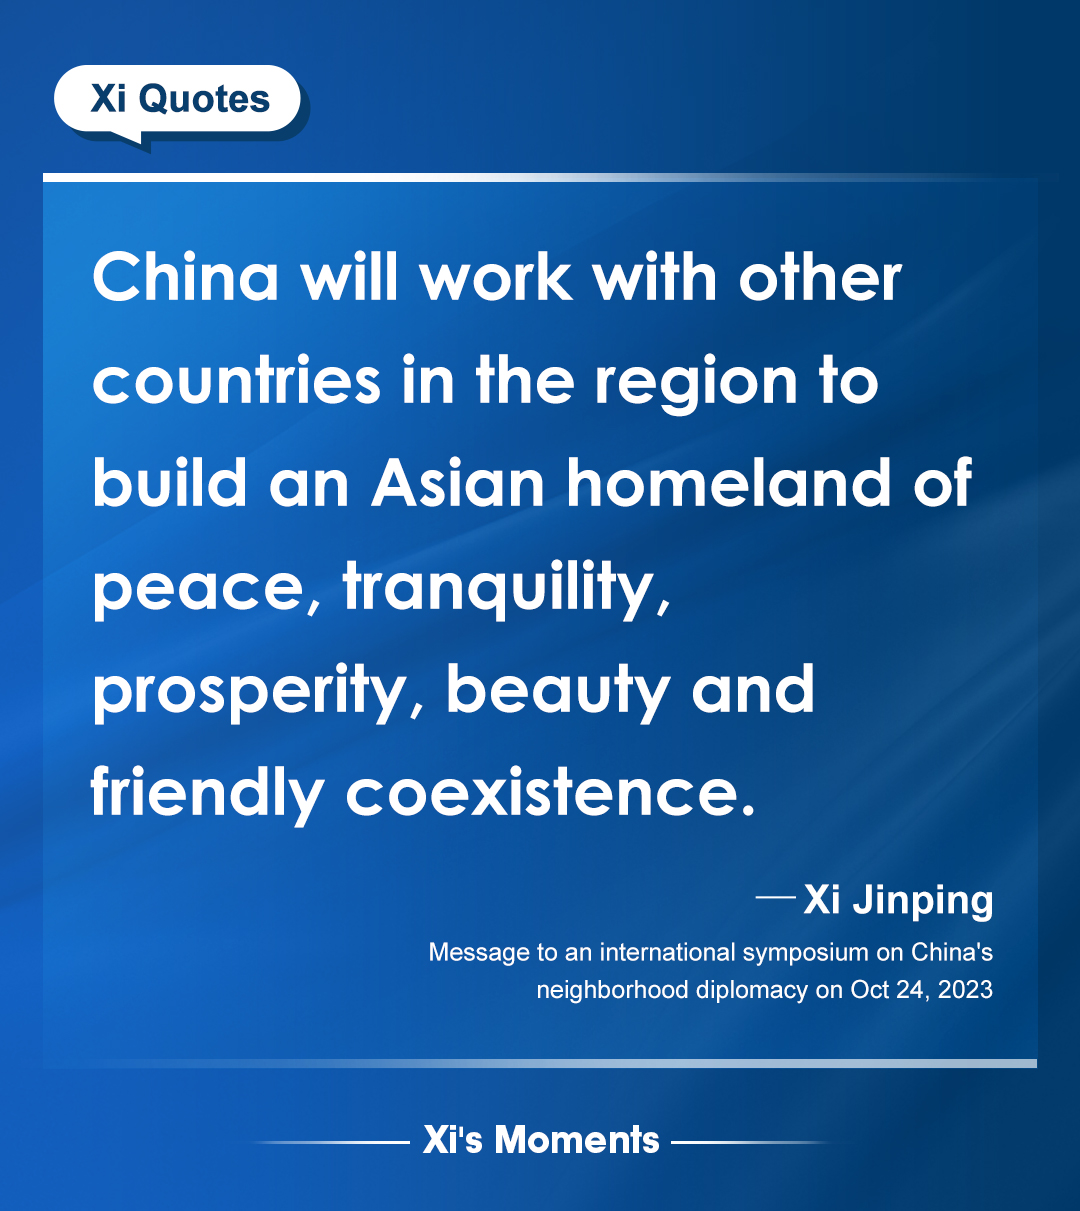 Xi on China's neighborhood diplomacy